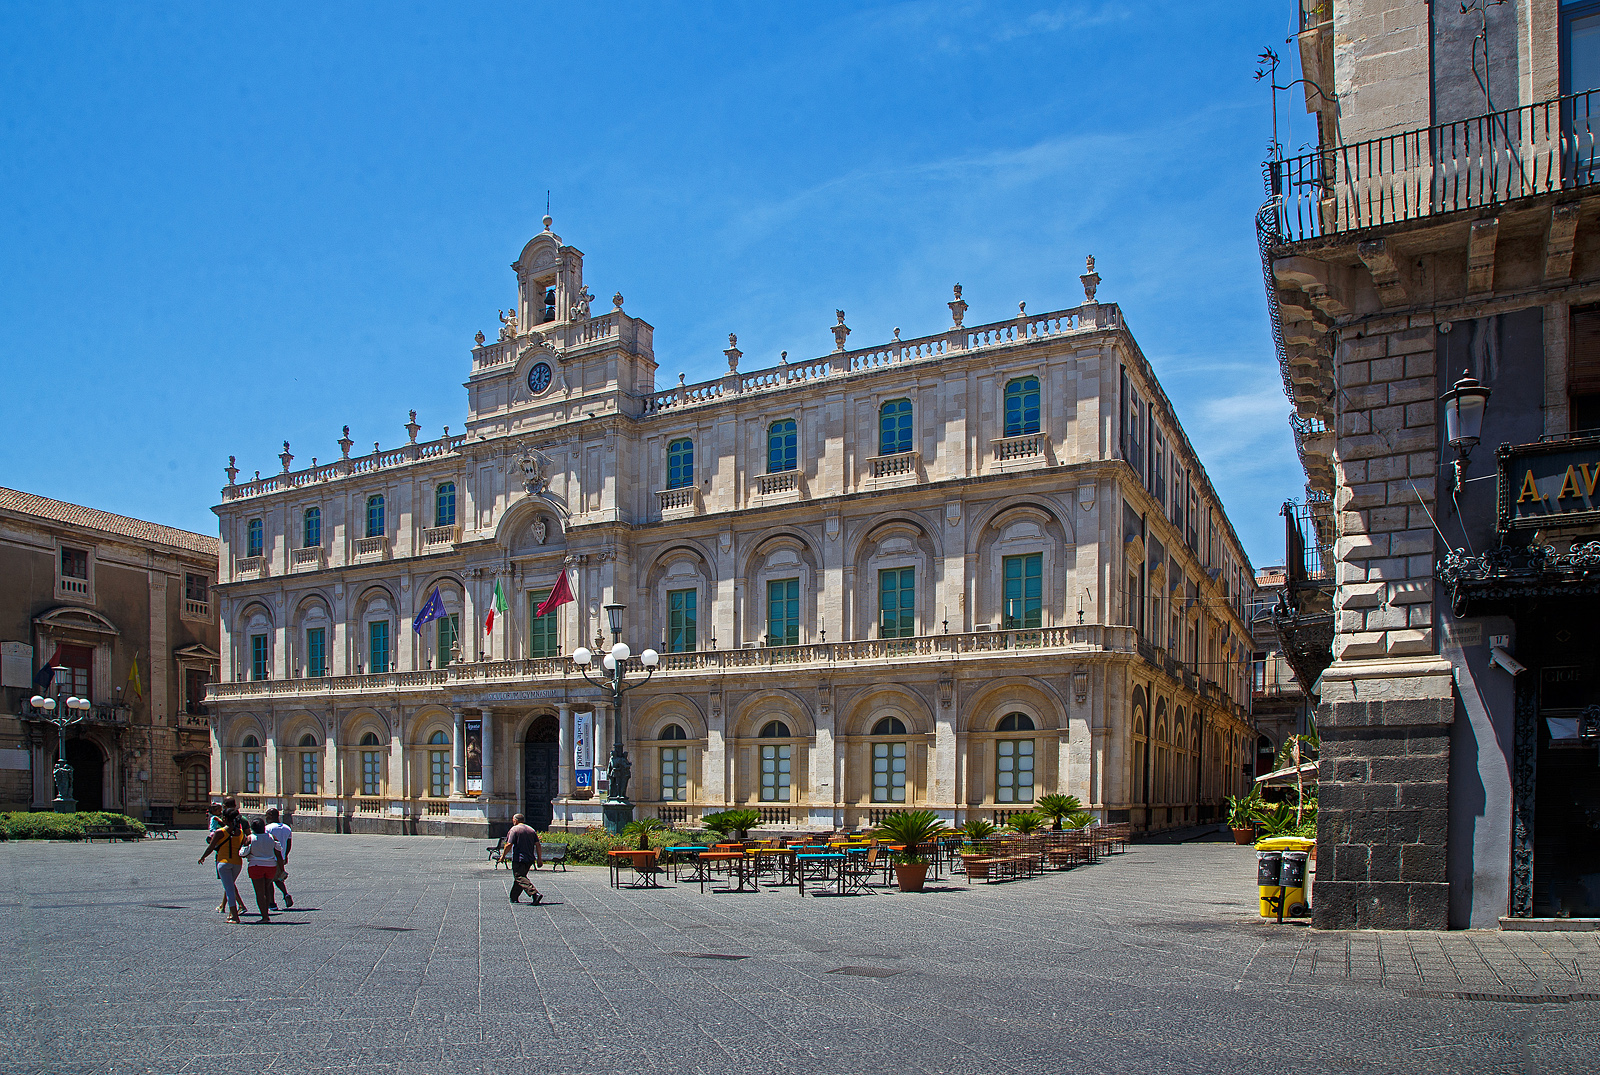 Palazzo dell'Università in Catania am 17.07.2022.

Das Gebäude der Universität von Catania befindet sich auf dem gleichnamigen Platz entlang der Via Etnea. Sie ist Sitz des Rektorats der Bürgeruniversität.